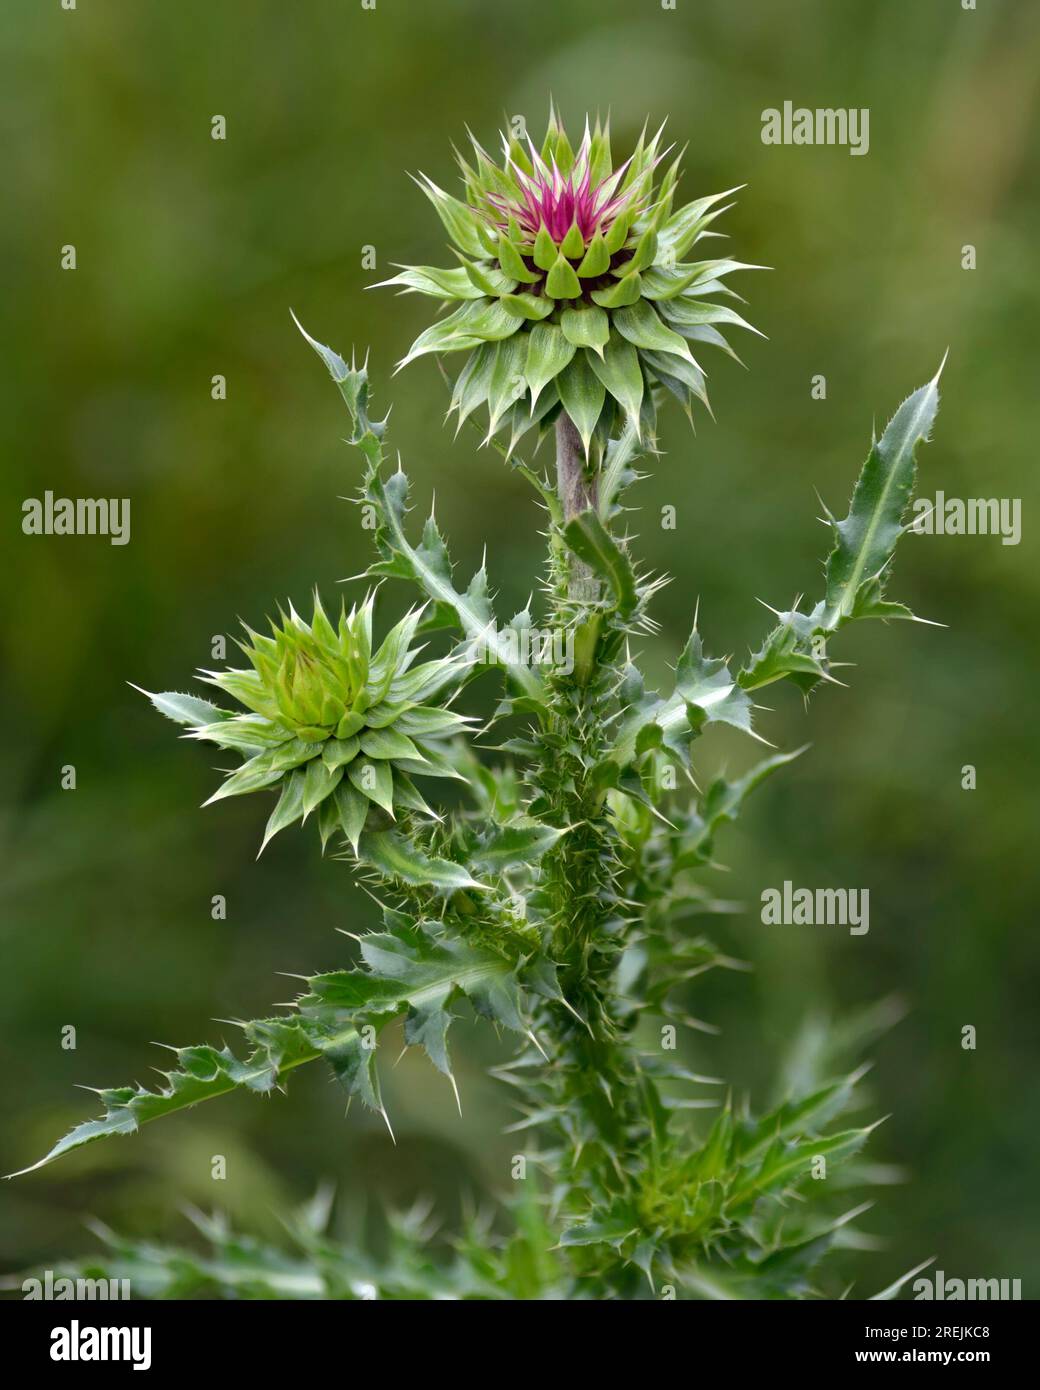 Nodding Thistle (Carduus nutans), un'erba invasiva, nota anche come Cardo muschiato fotografato su un morbido sfondo verde. Fiore nazionale della Scozia. Foto Stock